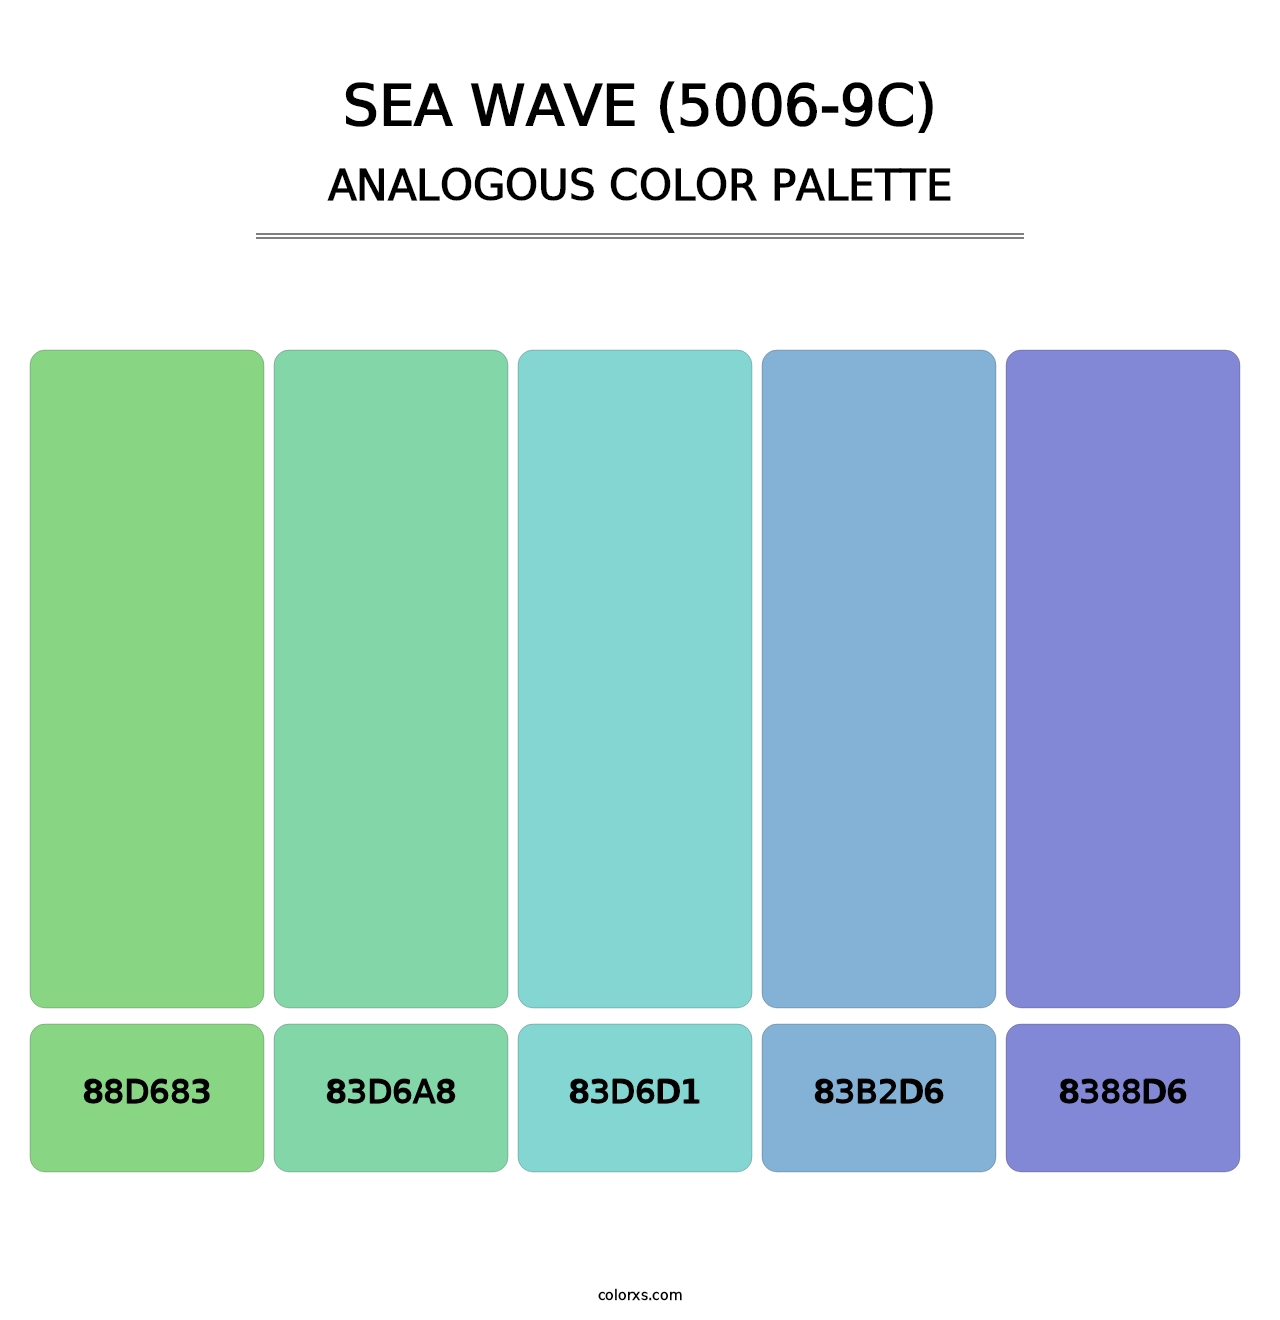 Sea Wave (5006-9C) - Analogous Color Palette